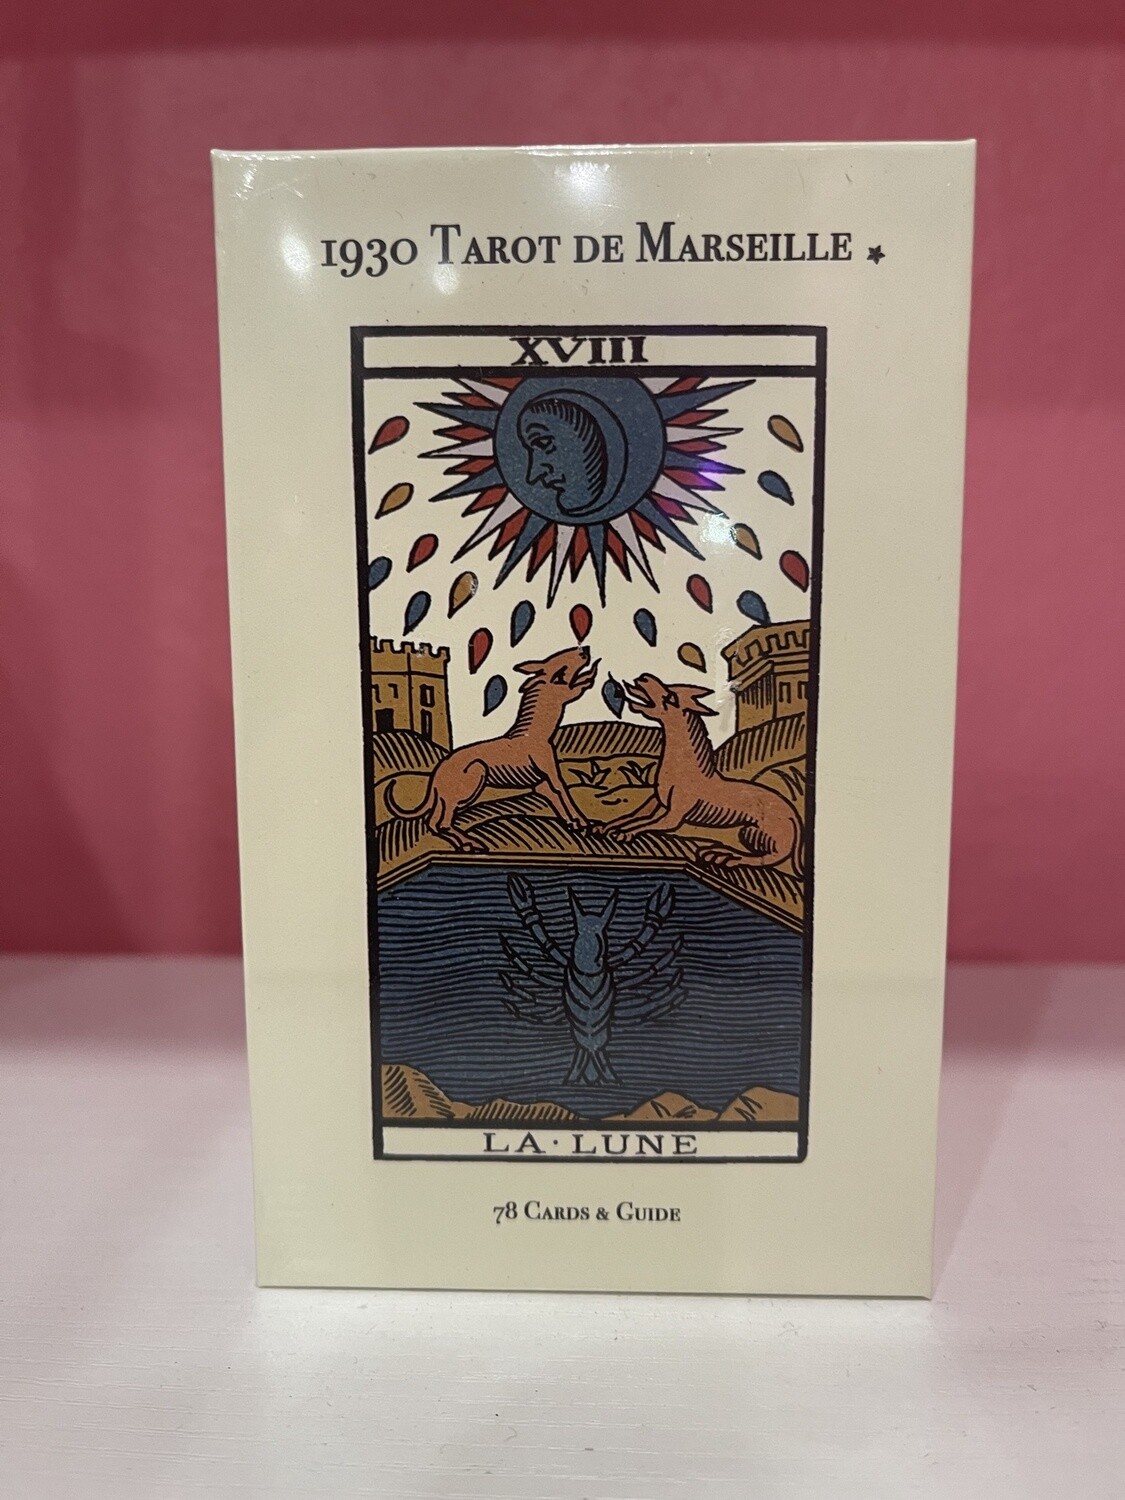 1930 Tarot de Marseille & Guide